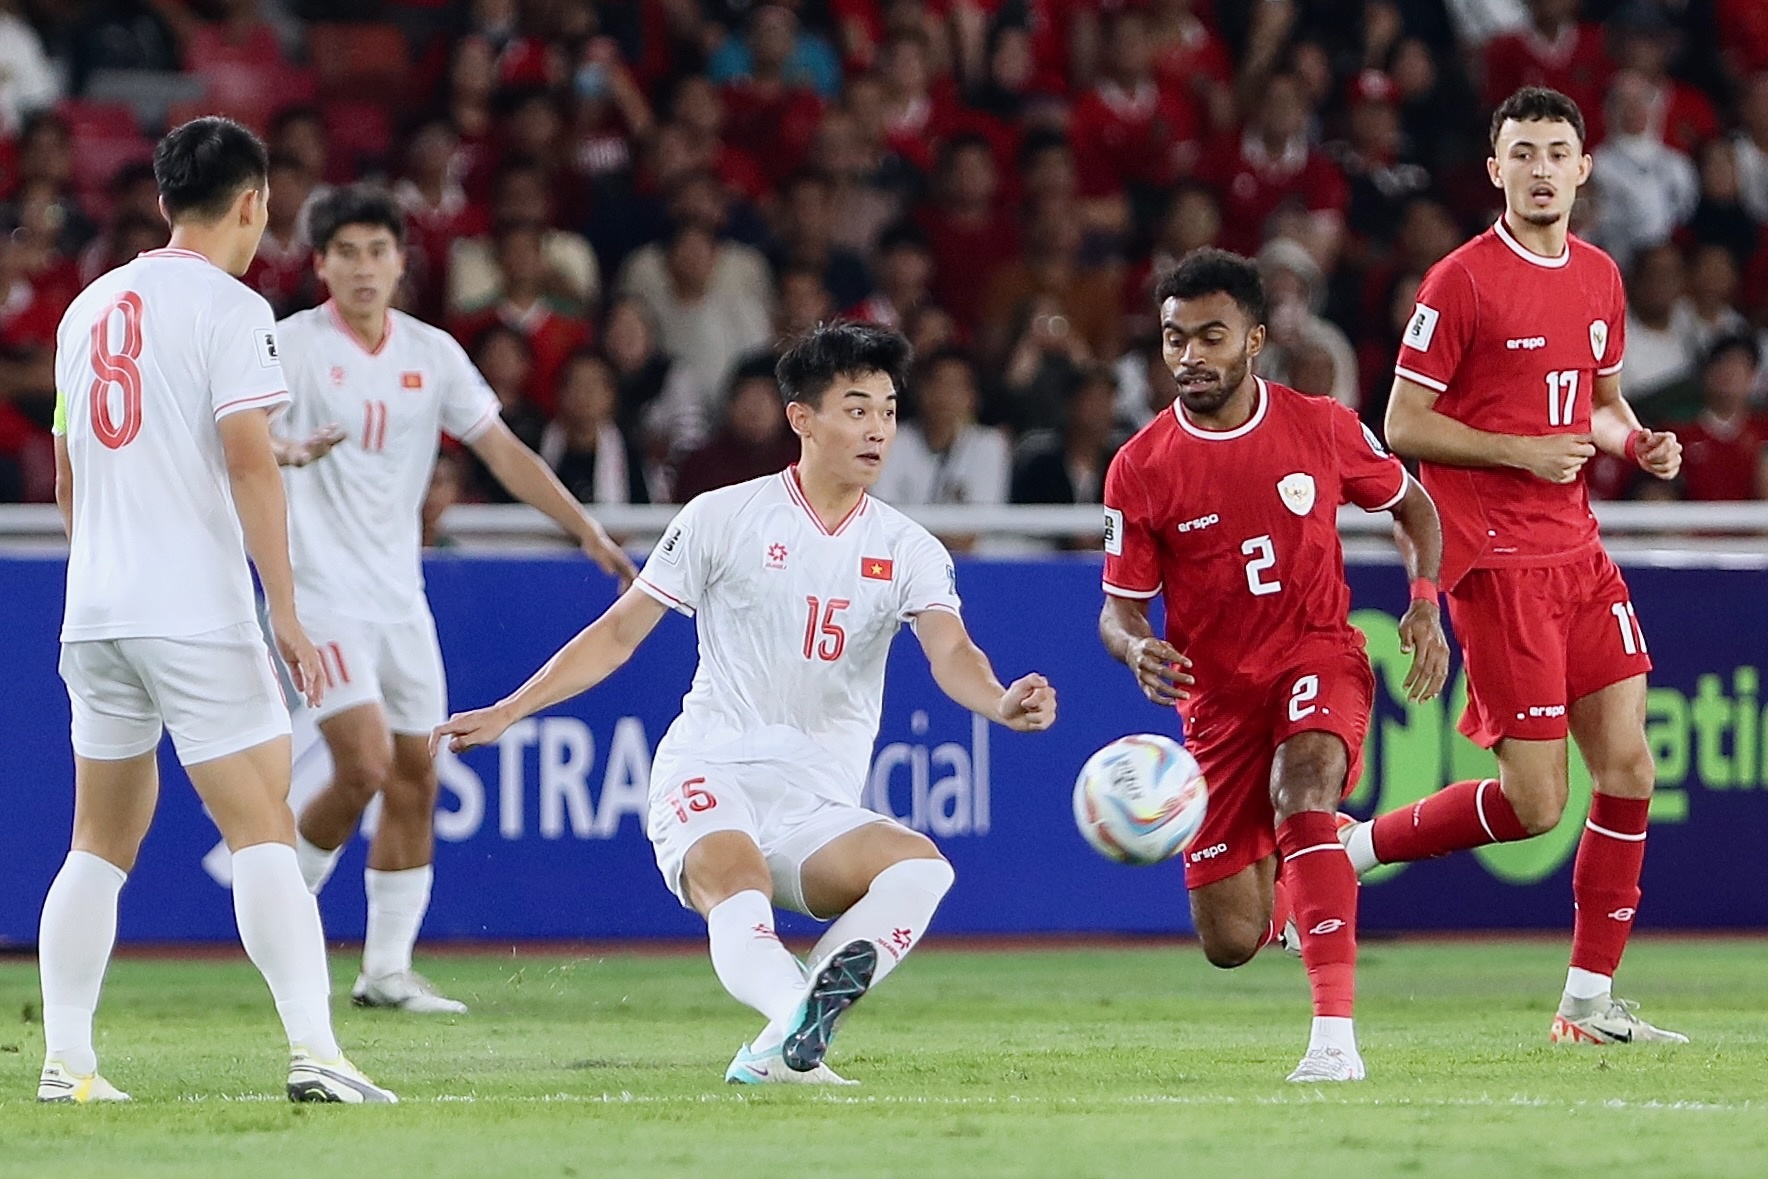 U23 Việt Nam vs Kuwait: Thắng là đi tiếp - ảnh 1